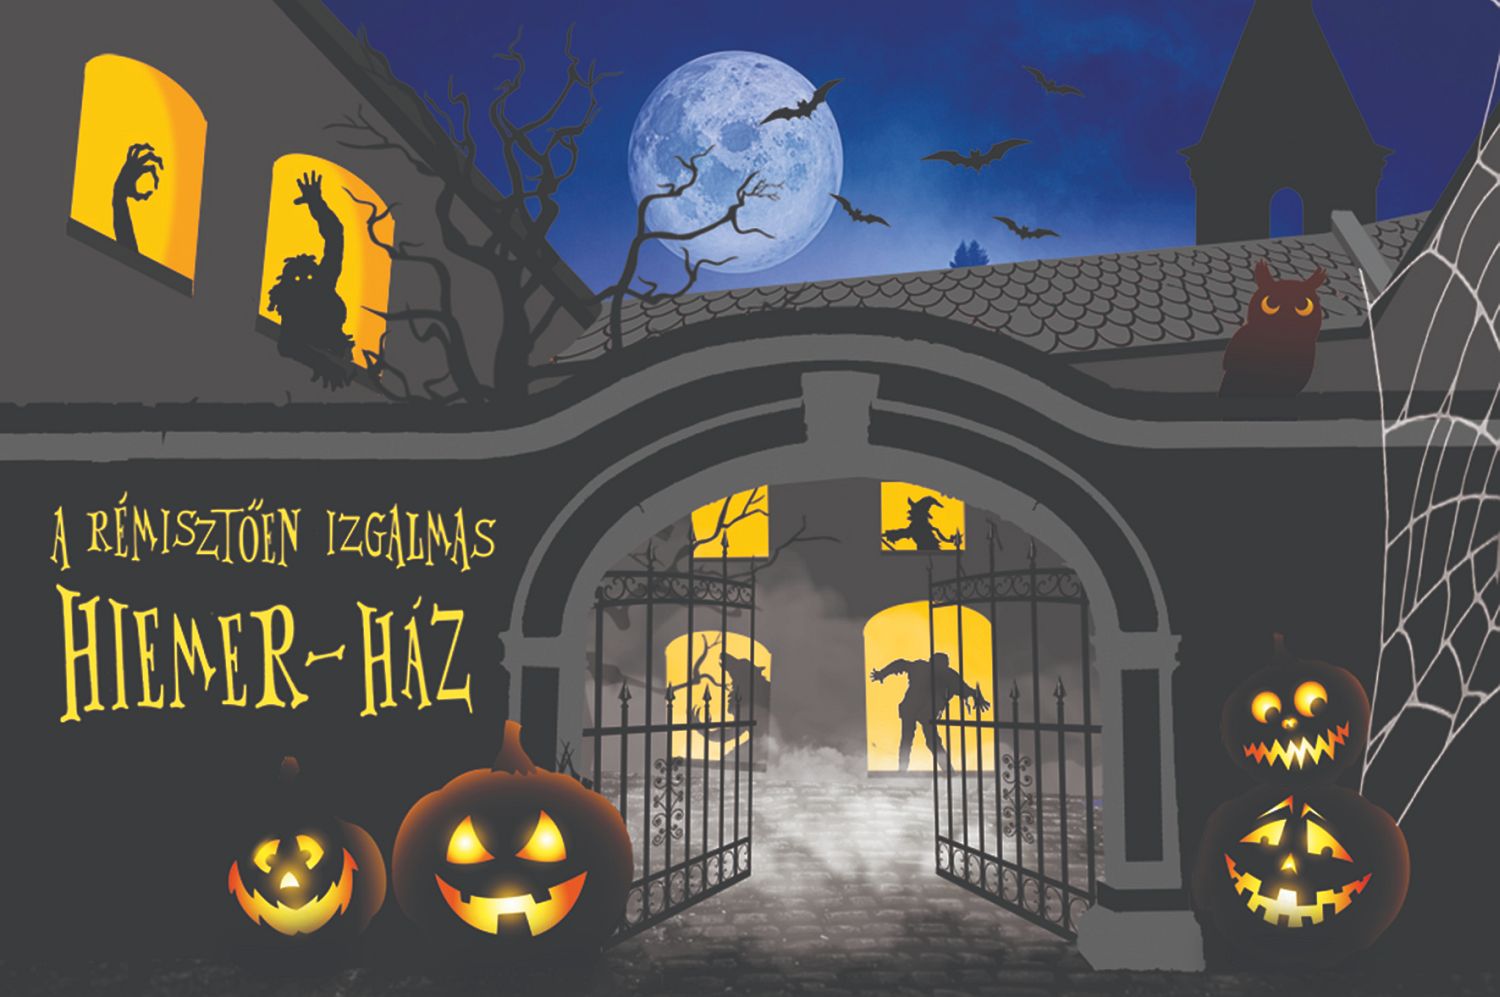 Kölyök Halloween és Kísértet séta is lesz a rémisztően izgalmas Hiemer-házban